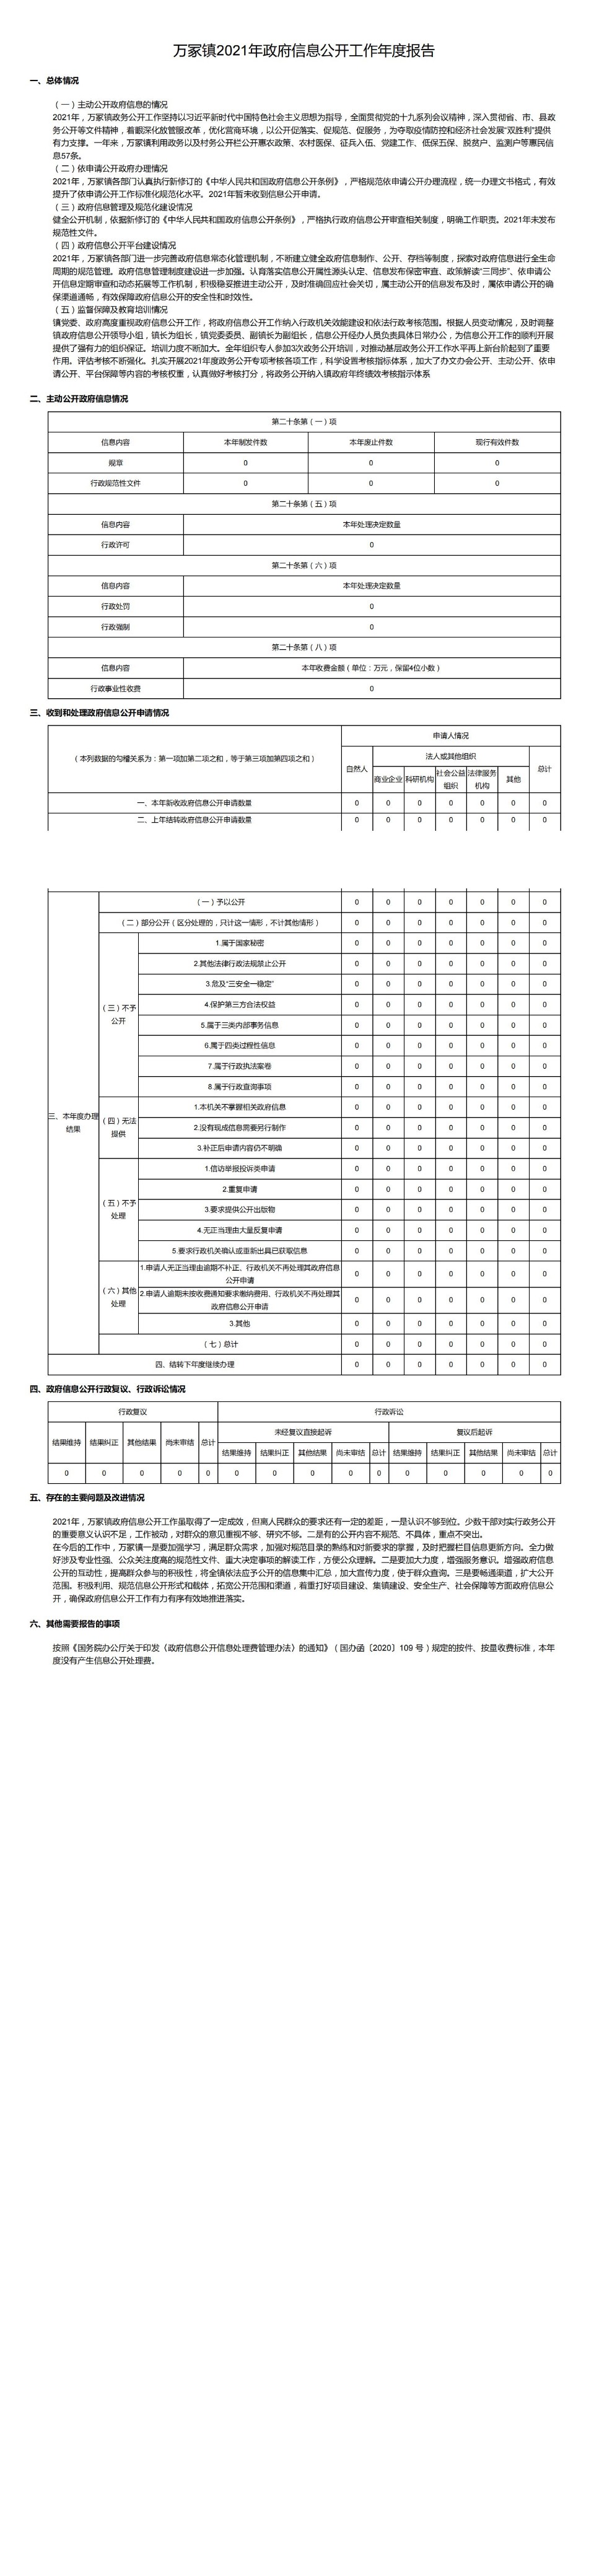 万冢镇2021年政府信息公开工作年度报告_00.jpg